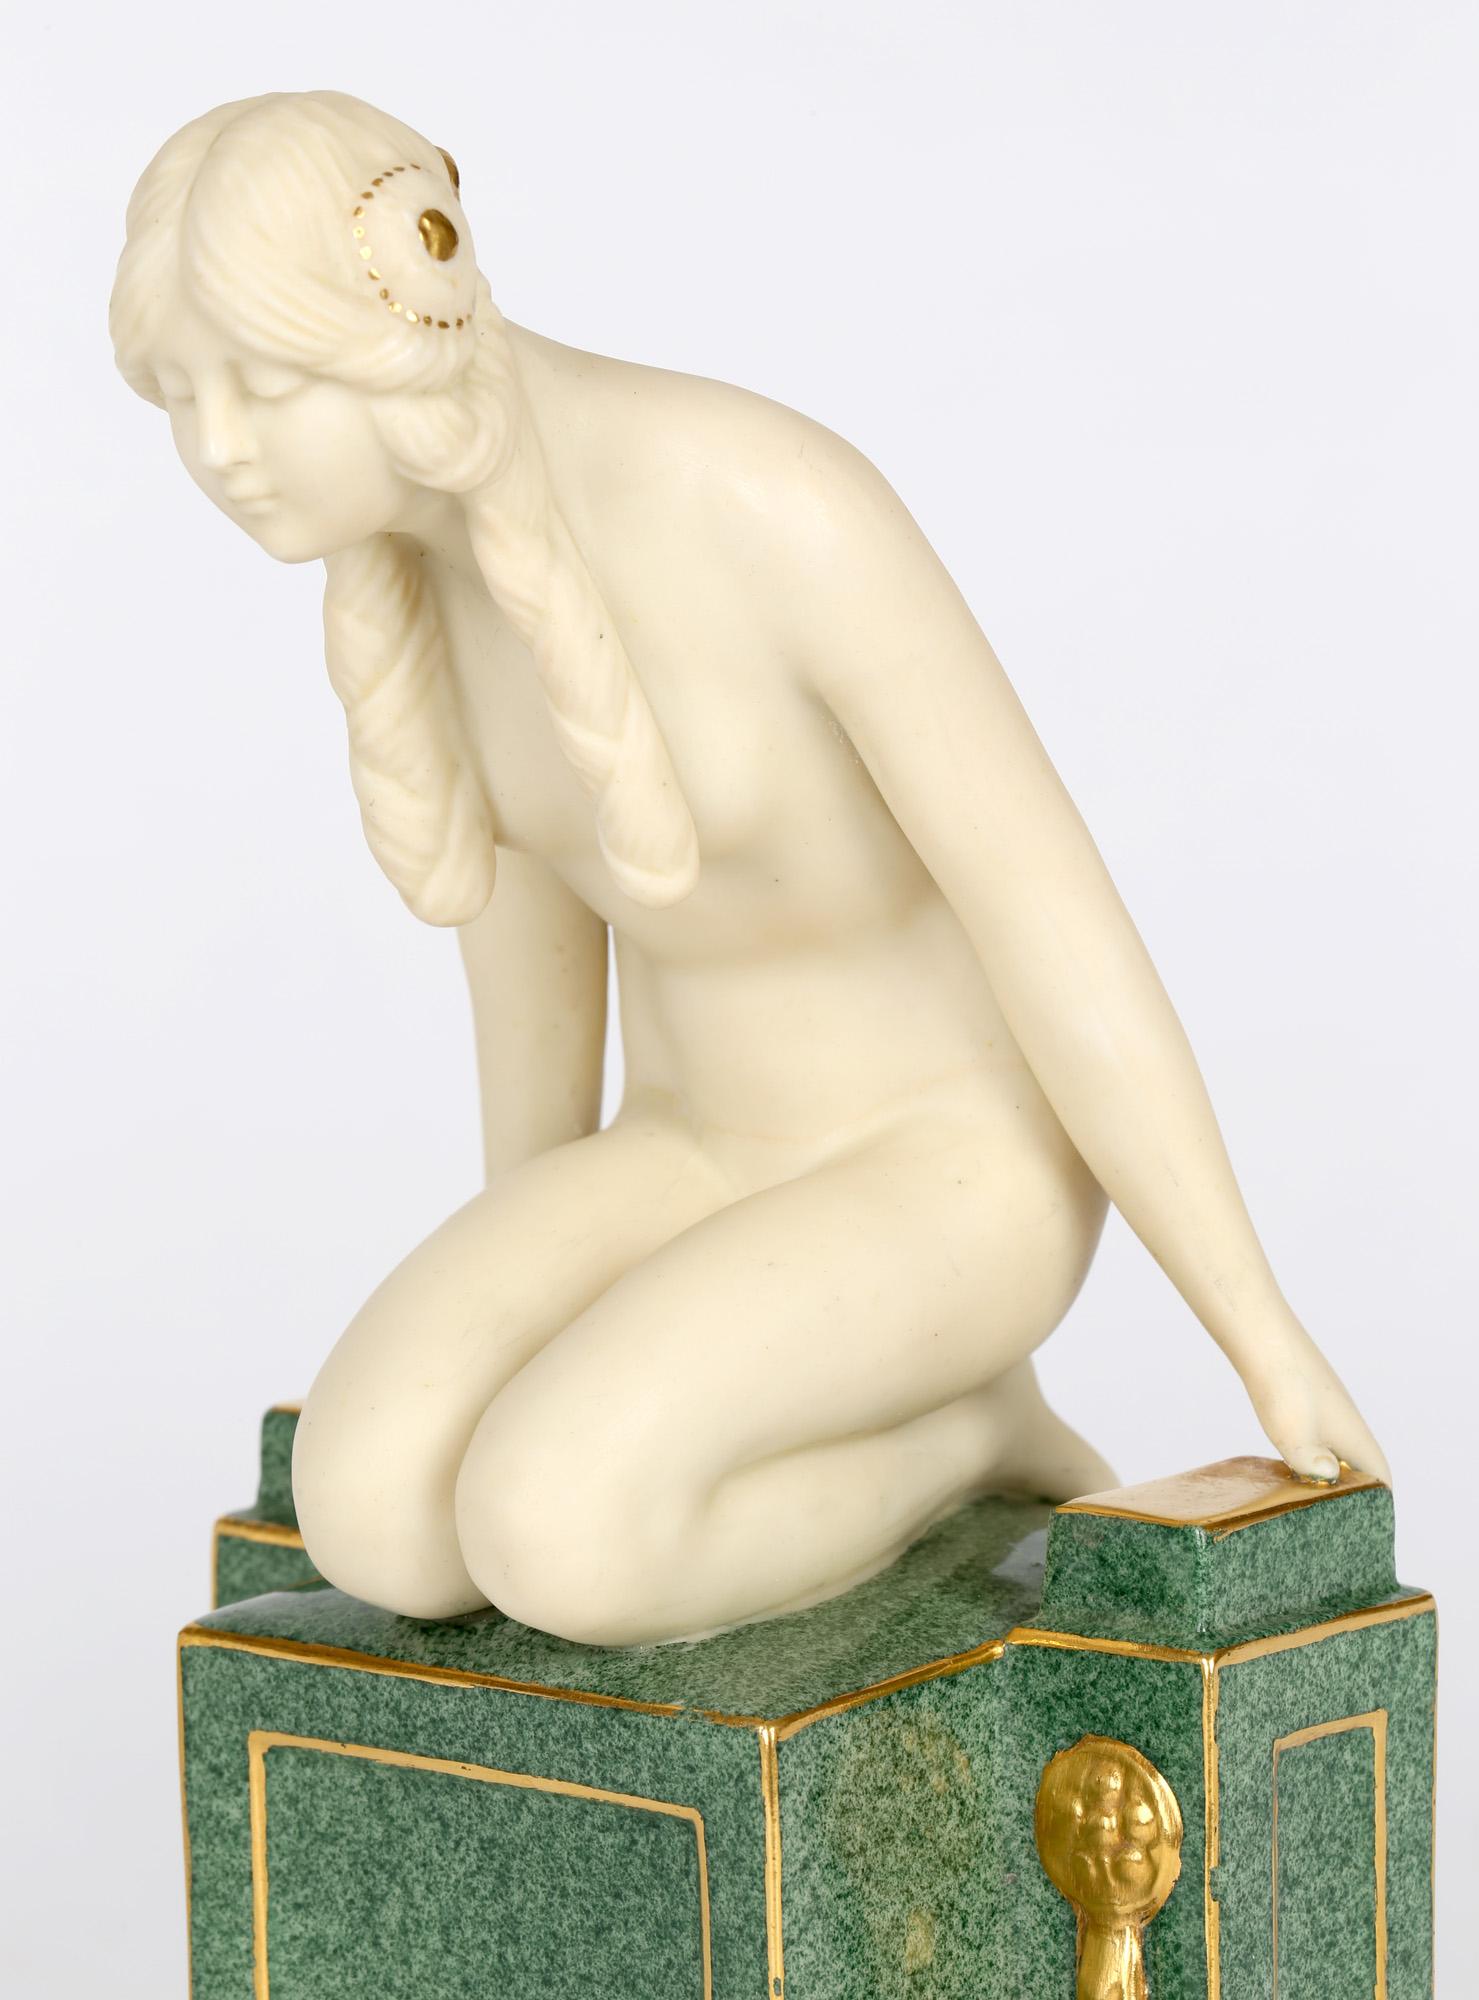 Frederick Gertner Royal Worcester Art Deco Porcelain Sculptural Naiad Figurine 11